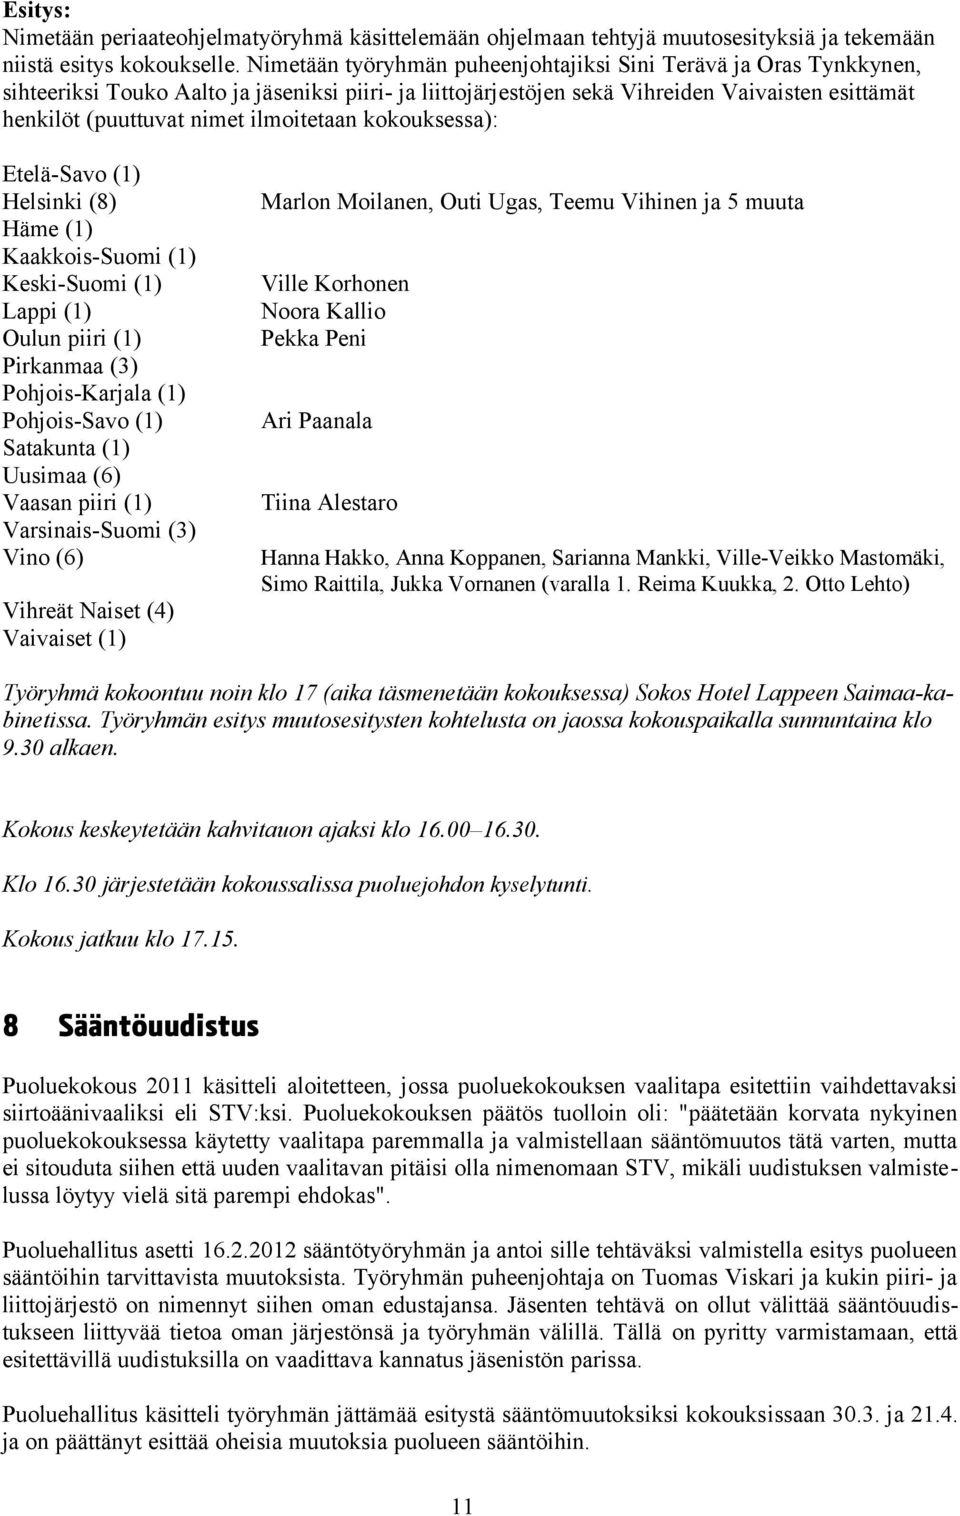 ilmoitetaan kokouksessa): Etelä-Savo (1) Helsinki (8) Häme (1) Kaakkois-Suomi (1) Keski-Suomi (1) Lappi (1) Oulun piiri (1) Pirkanmaa (3) Pohjois-Karjala (1) Pohjois-Savo (1) Satakunta (1) Uusimaa